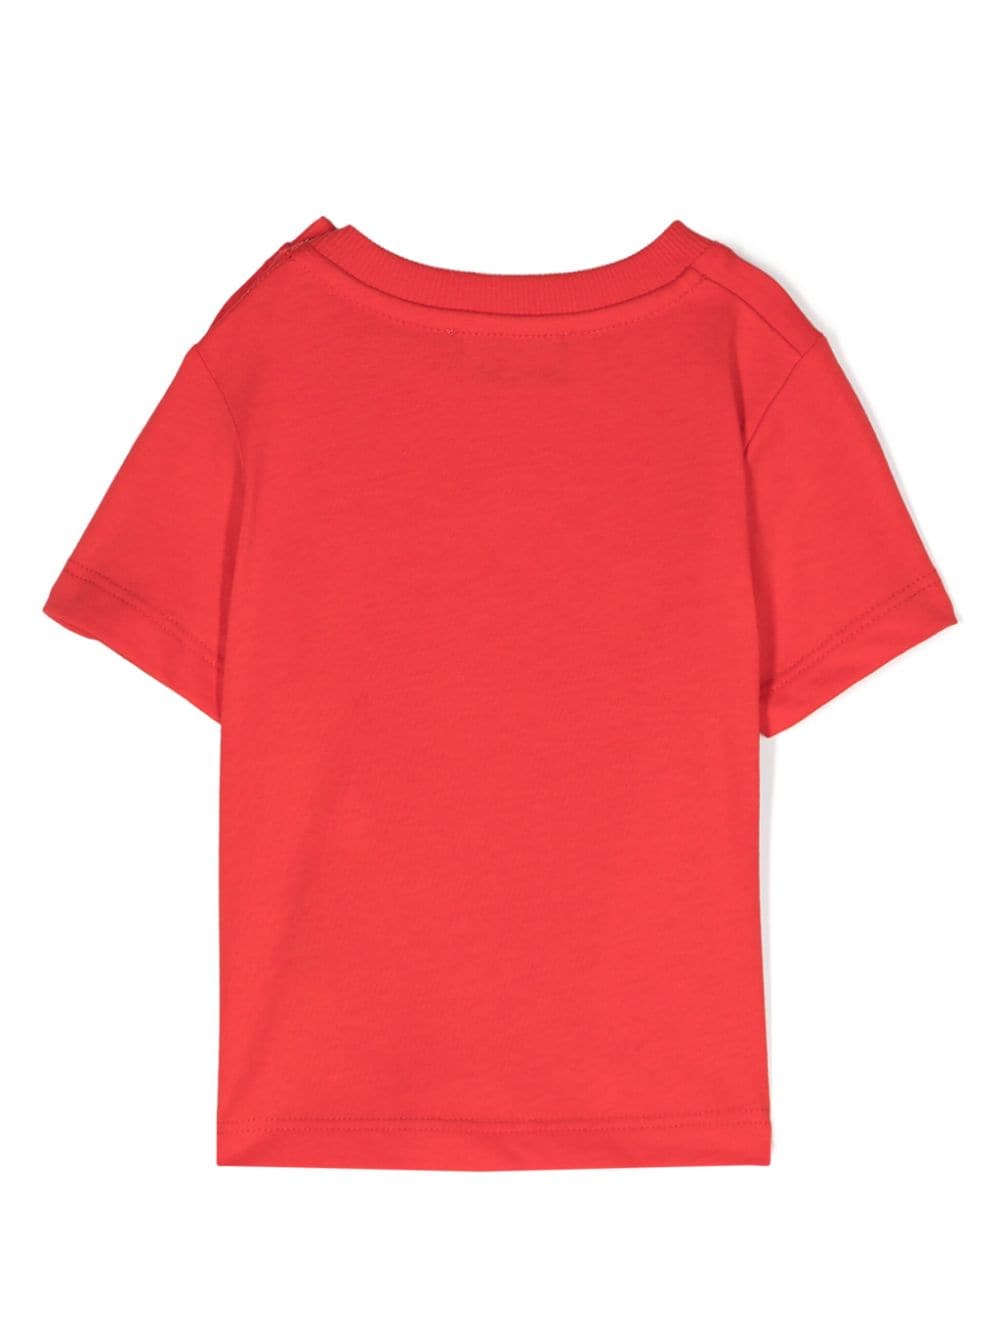 T-shirt nouveau-né rouge